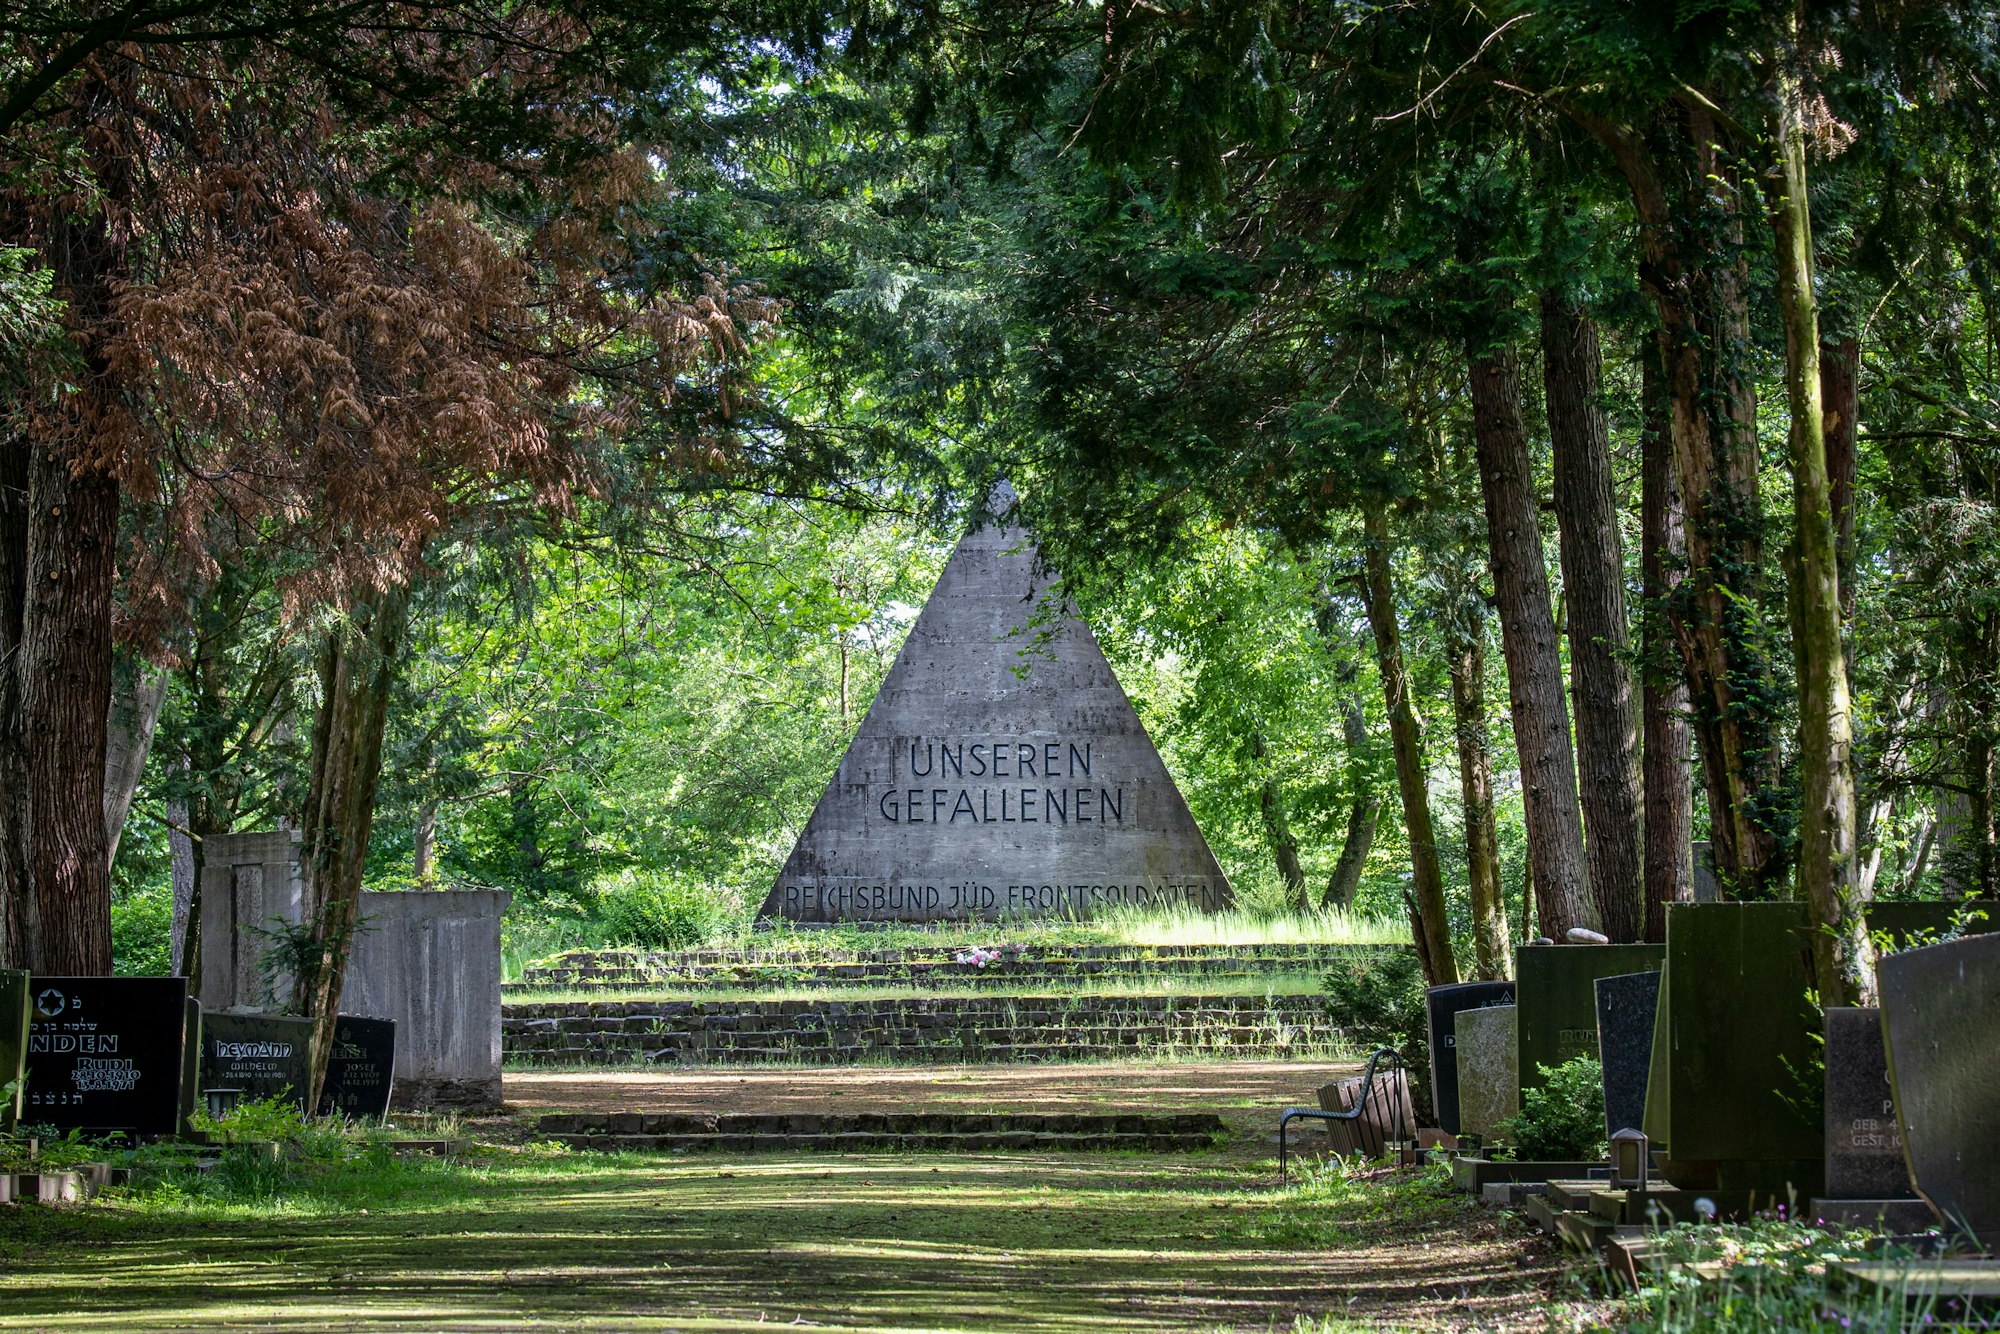 Das Denkmal ist eine graue Pyramide, auf der "unseren Gefallenen" steht und darunter "Reichsbund Jüd. Frontsoldaten". Es ist umgeben von Bäumen.